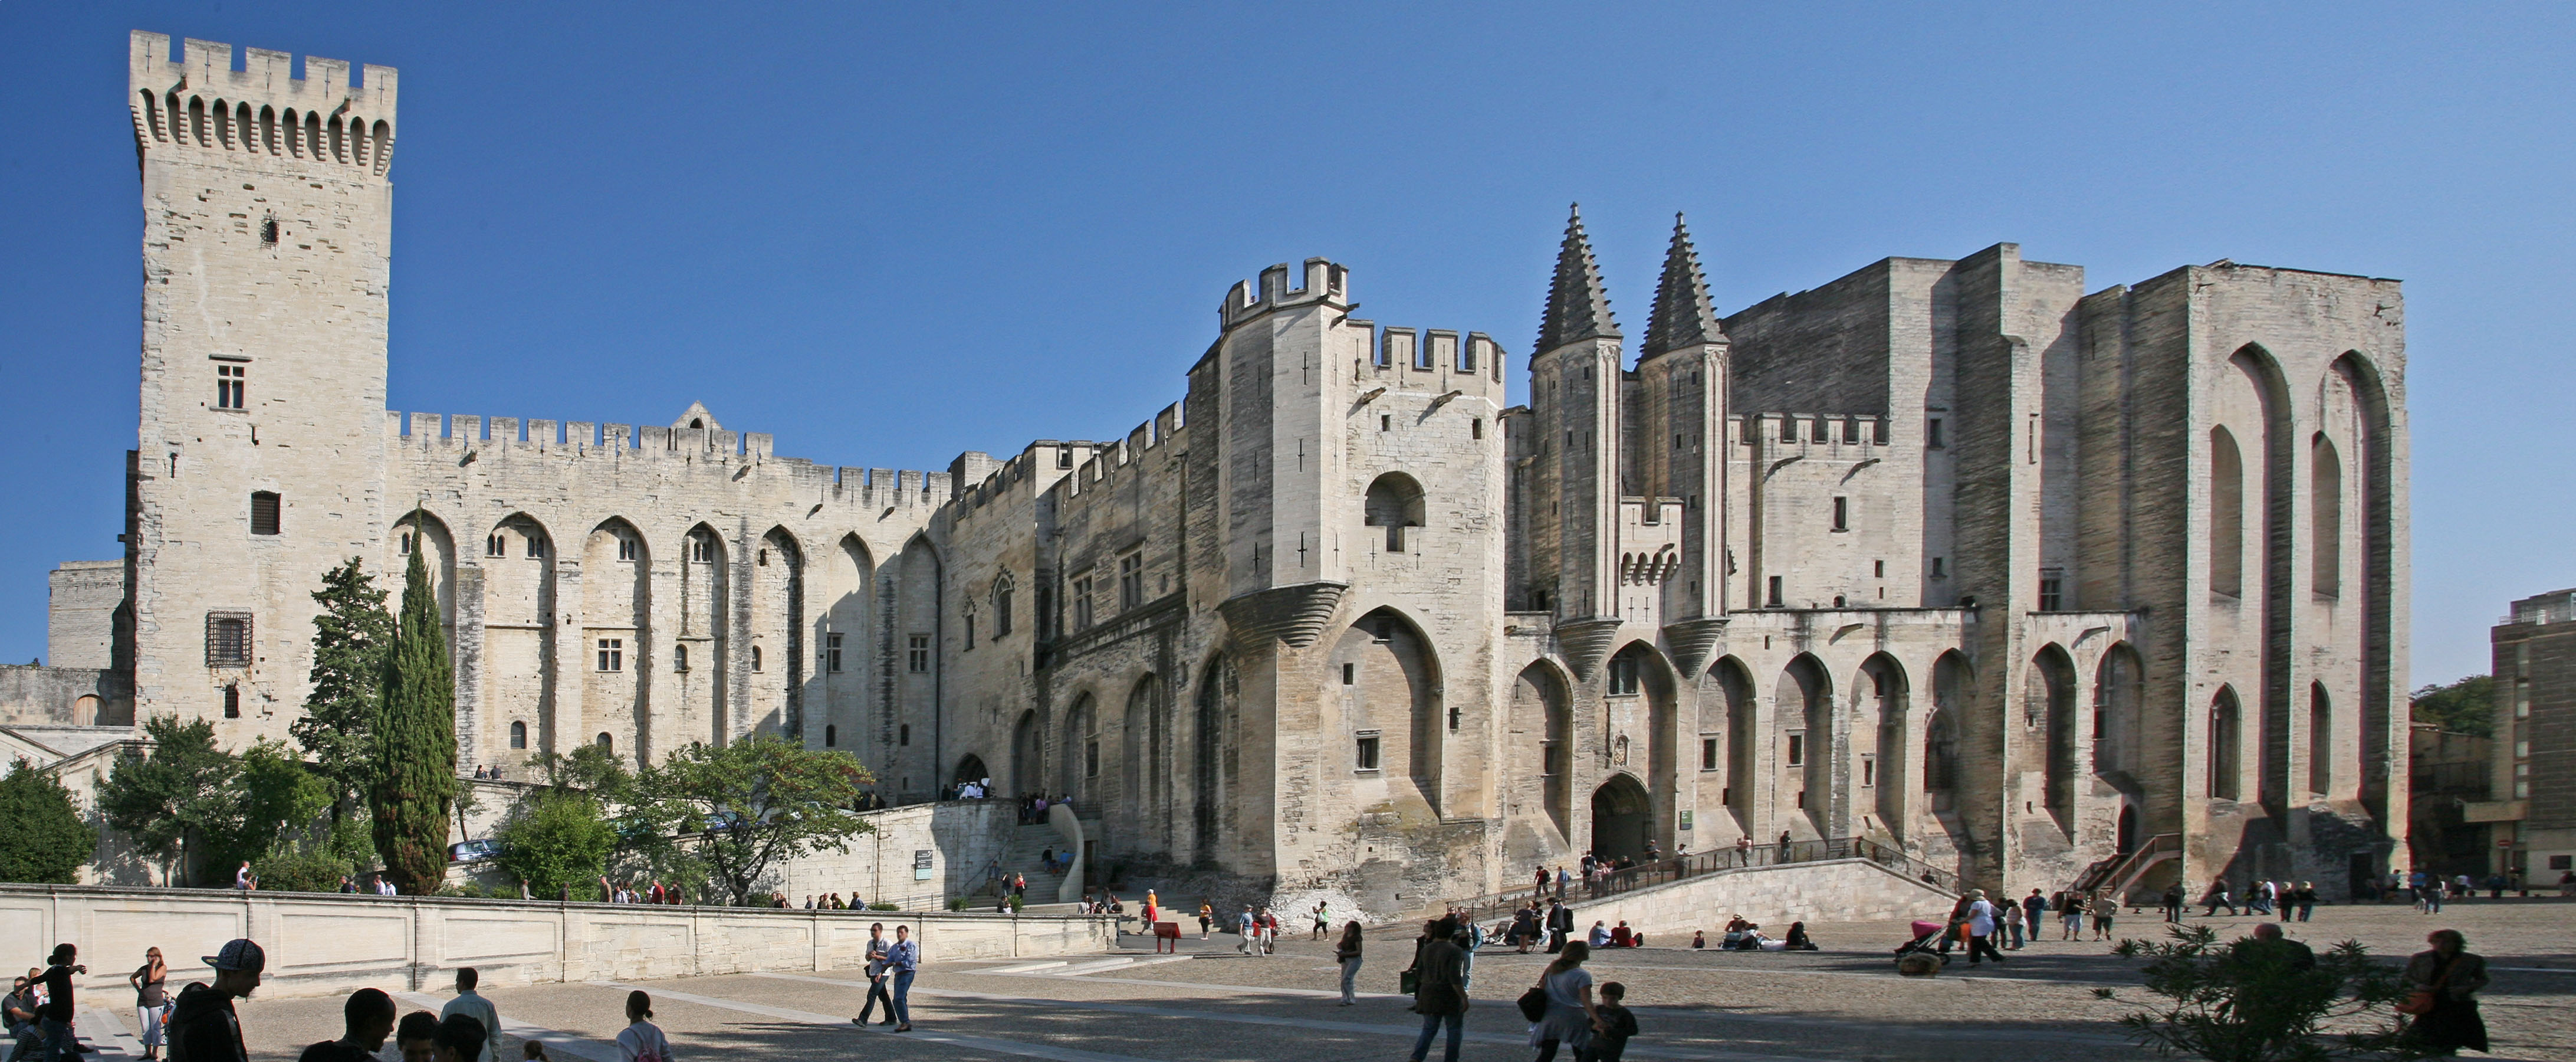 Avignon,_Palais_des_Papes_by_JM_Rosier